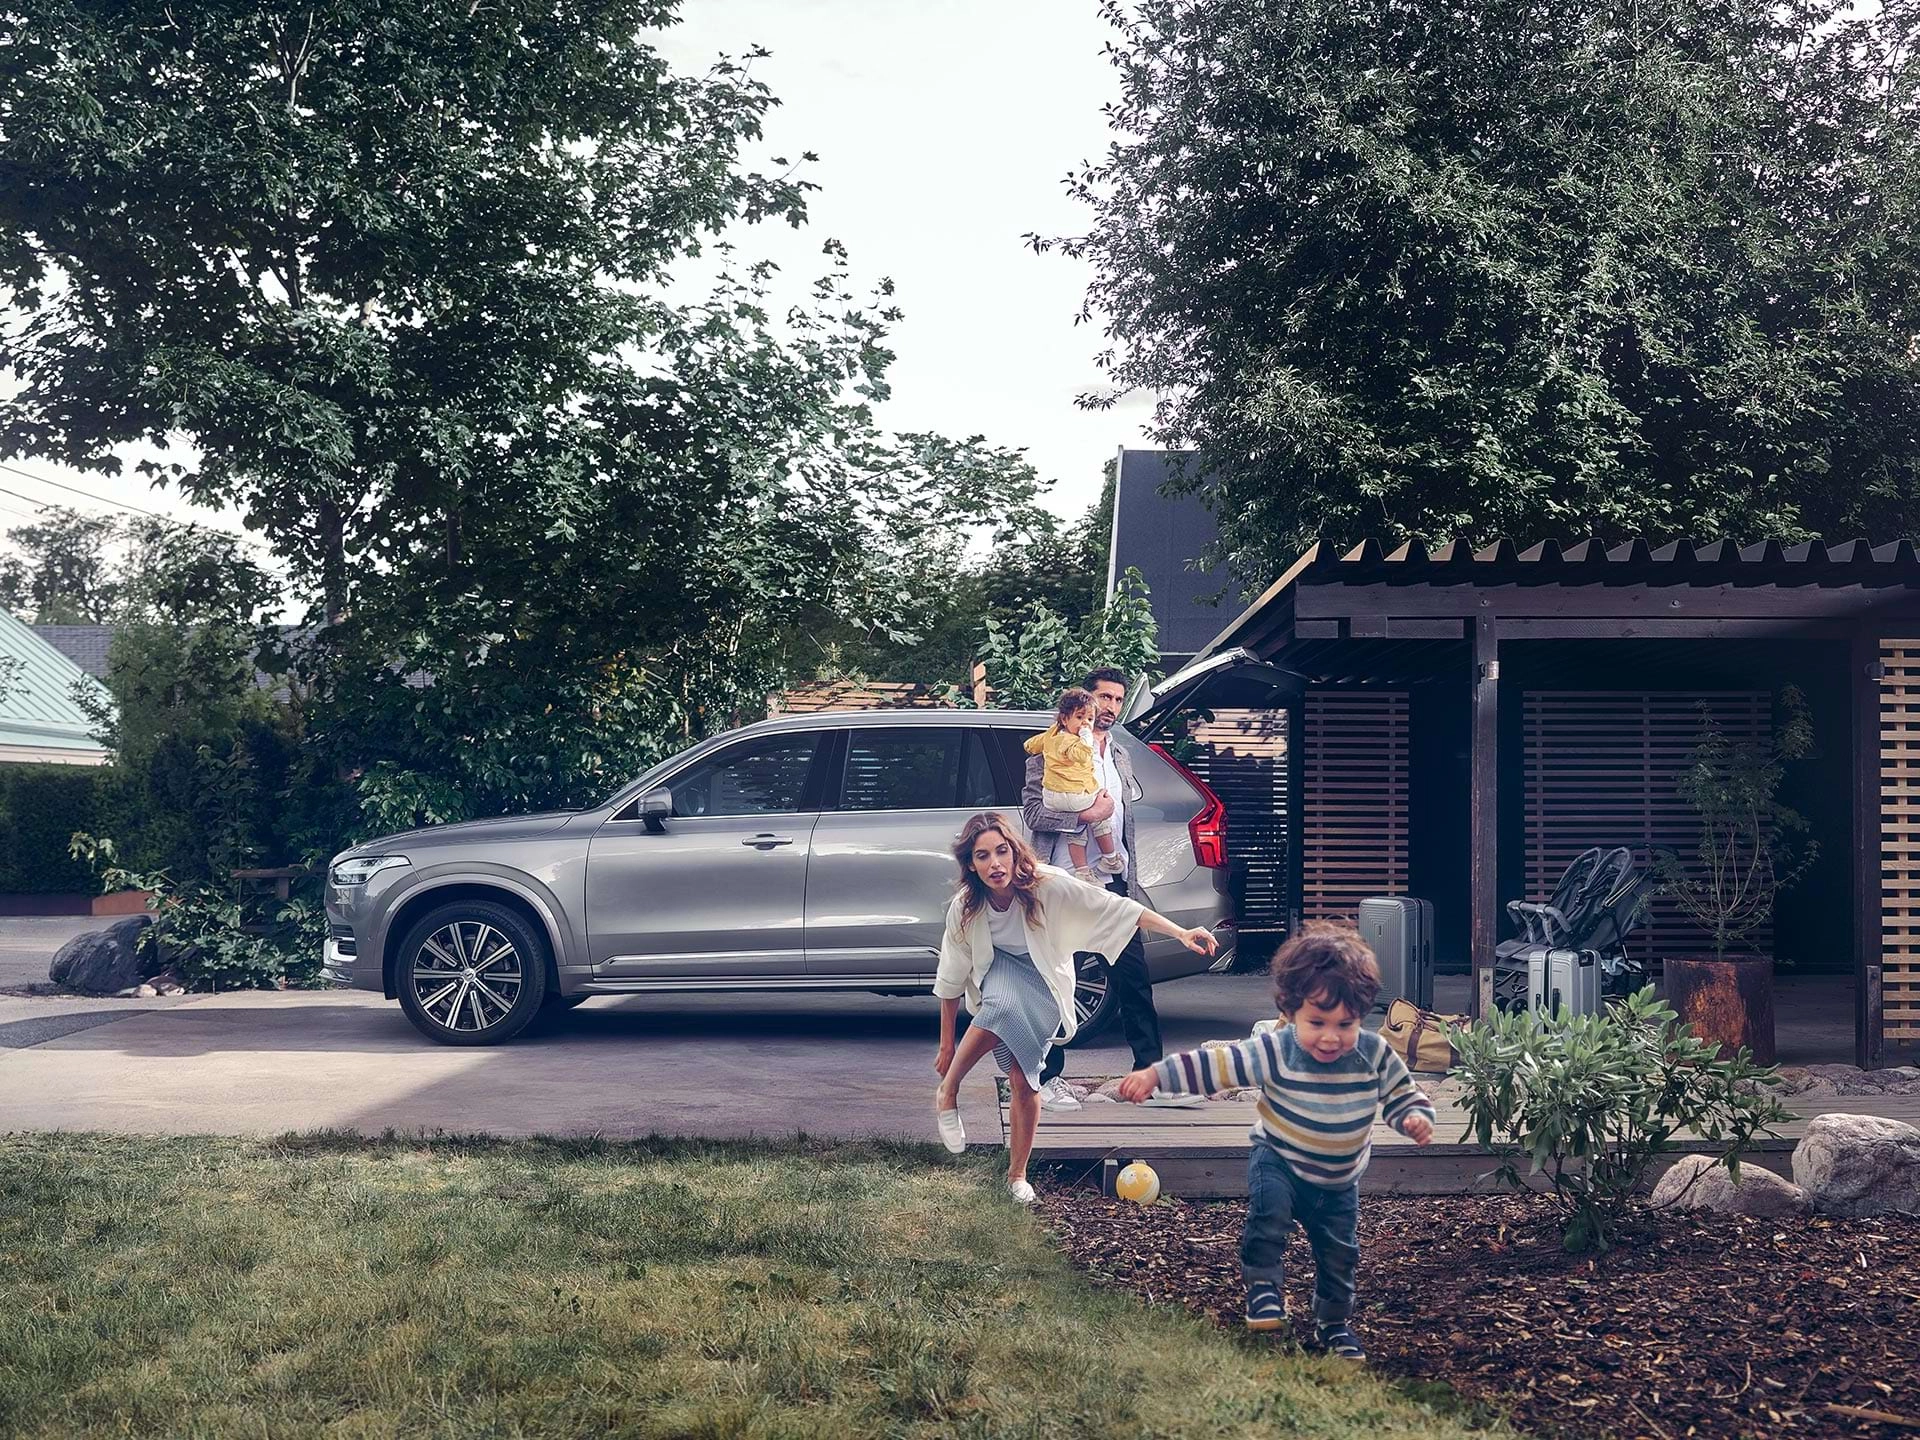 Քաղաքաի արվարձանում բնակվող ընտանիքը պատրաստվում է կատարել ուղևորություն իր Volvo քաղաքային ամենագնացով։ Երեխան վազում է տան բակում, նրա հետևից վազում է իր մայրիկը։